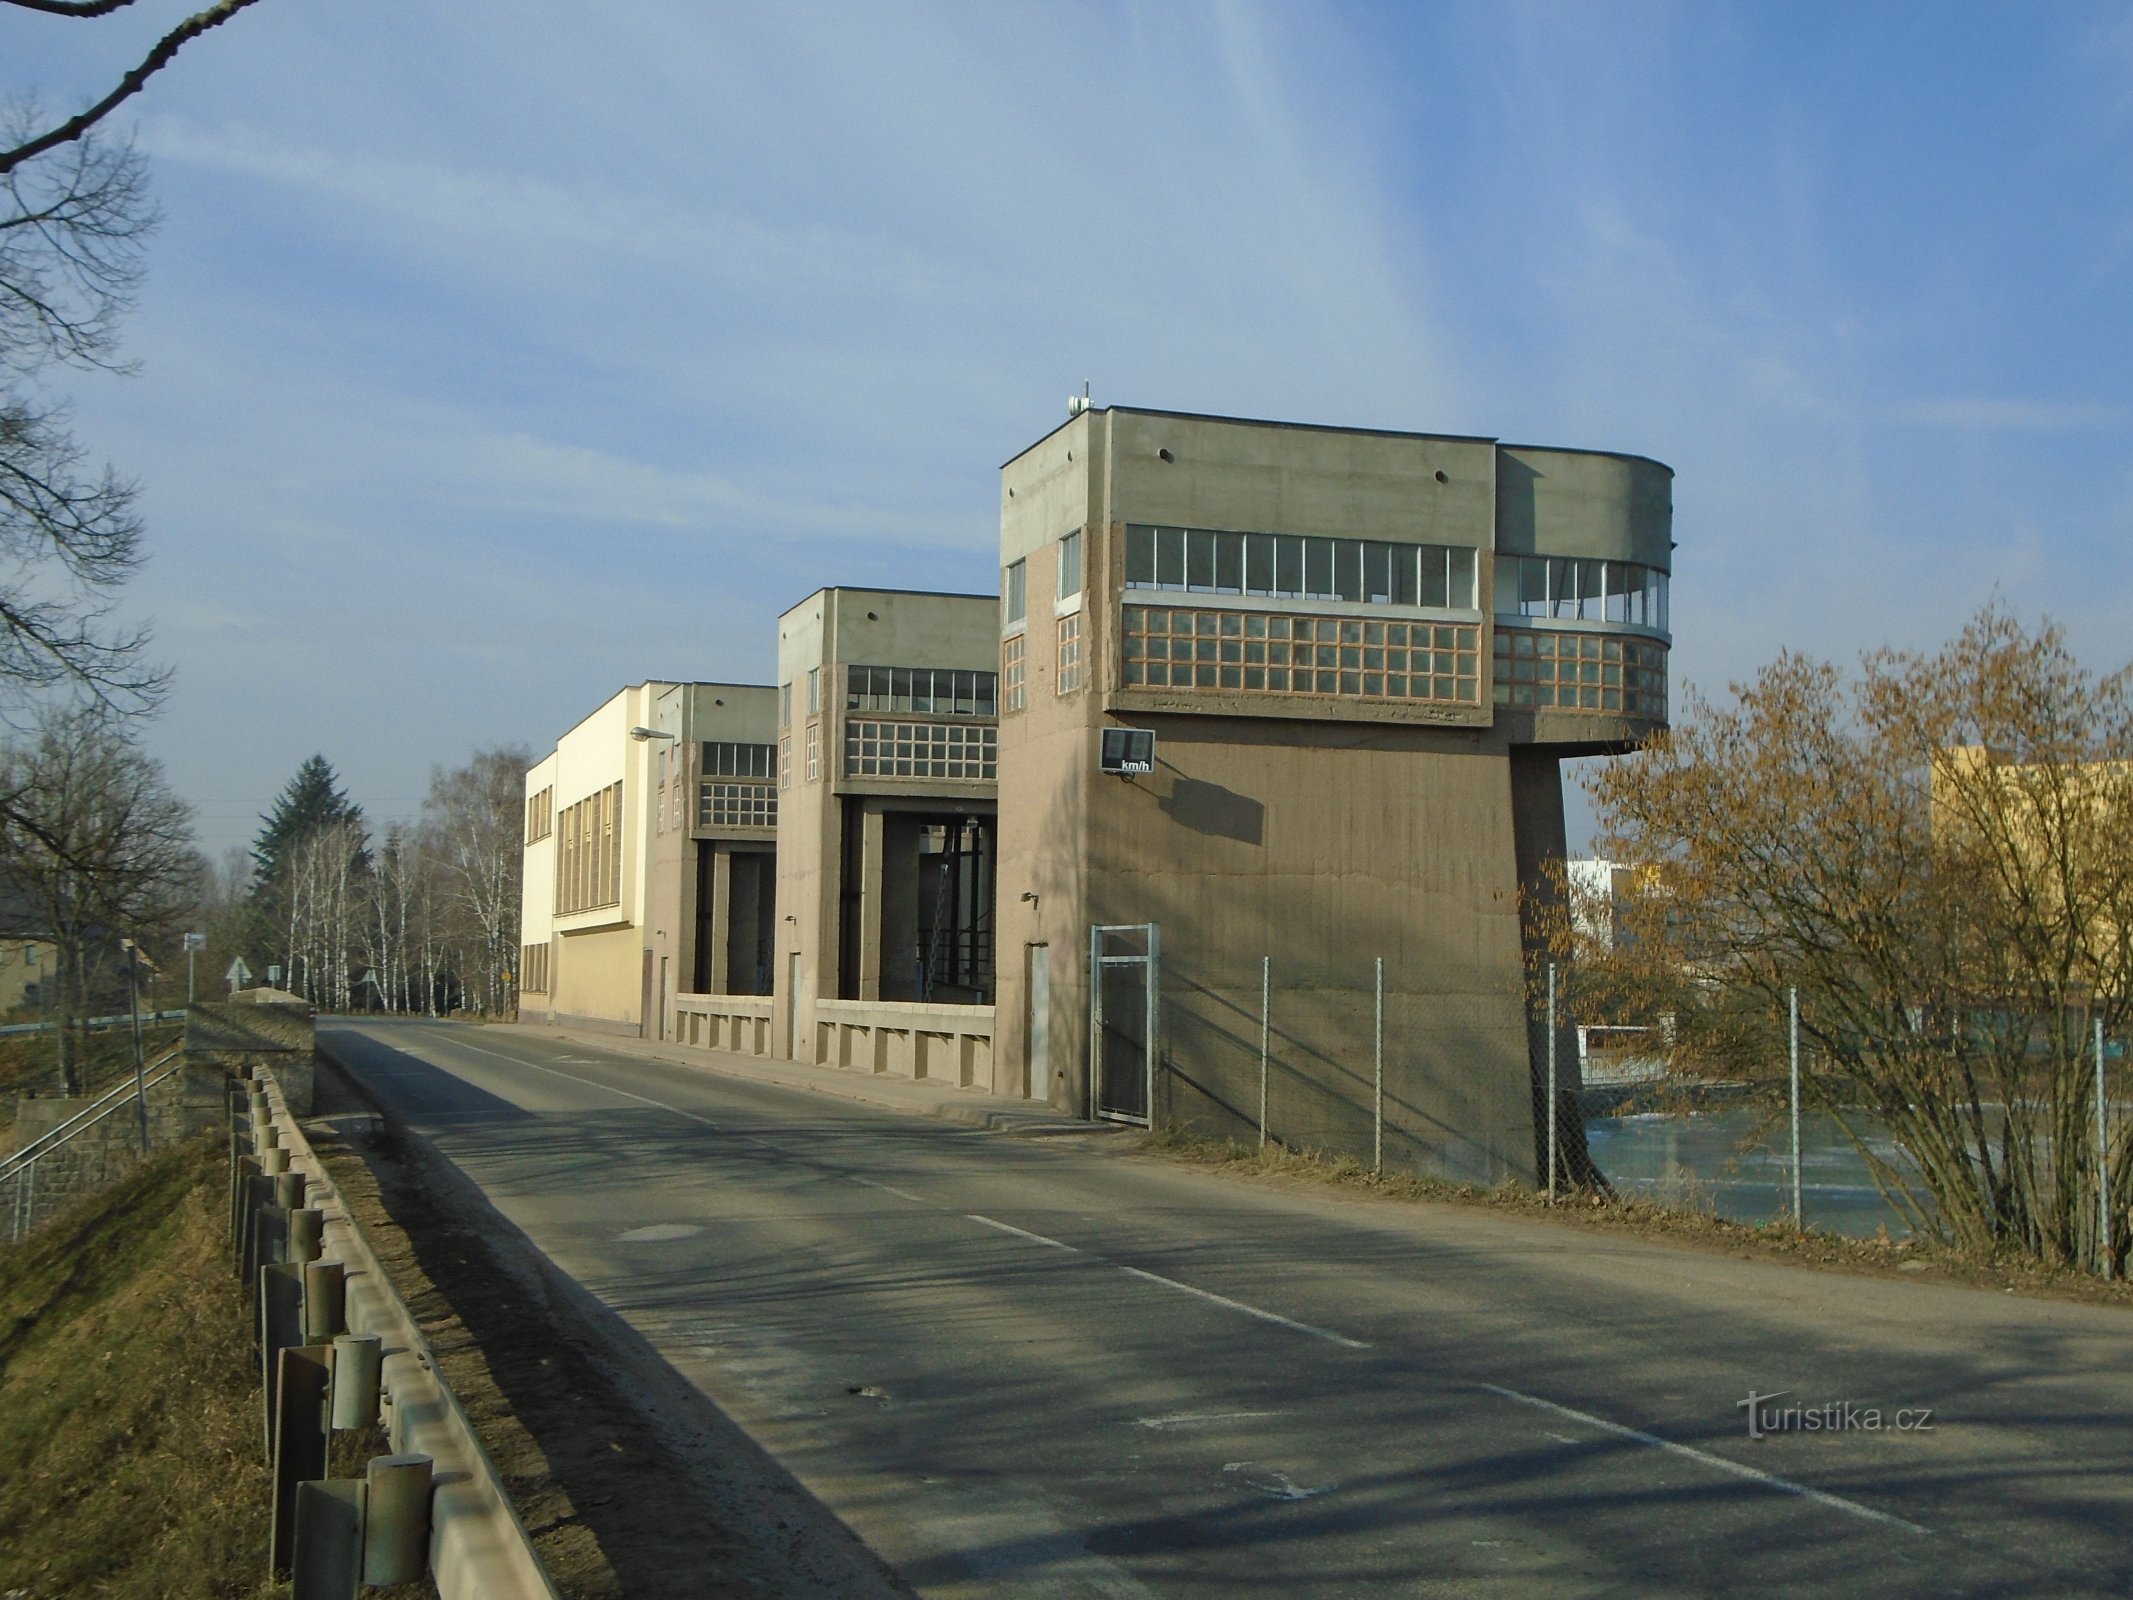 Petite centrale hydroélectrique (Předměřice nad Labem)